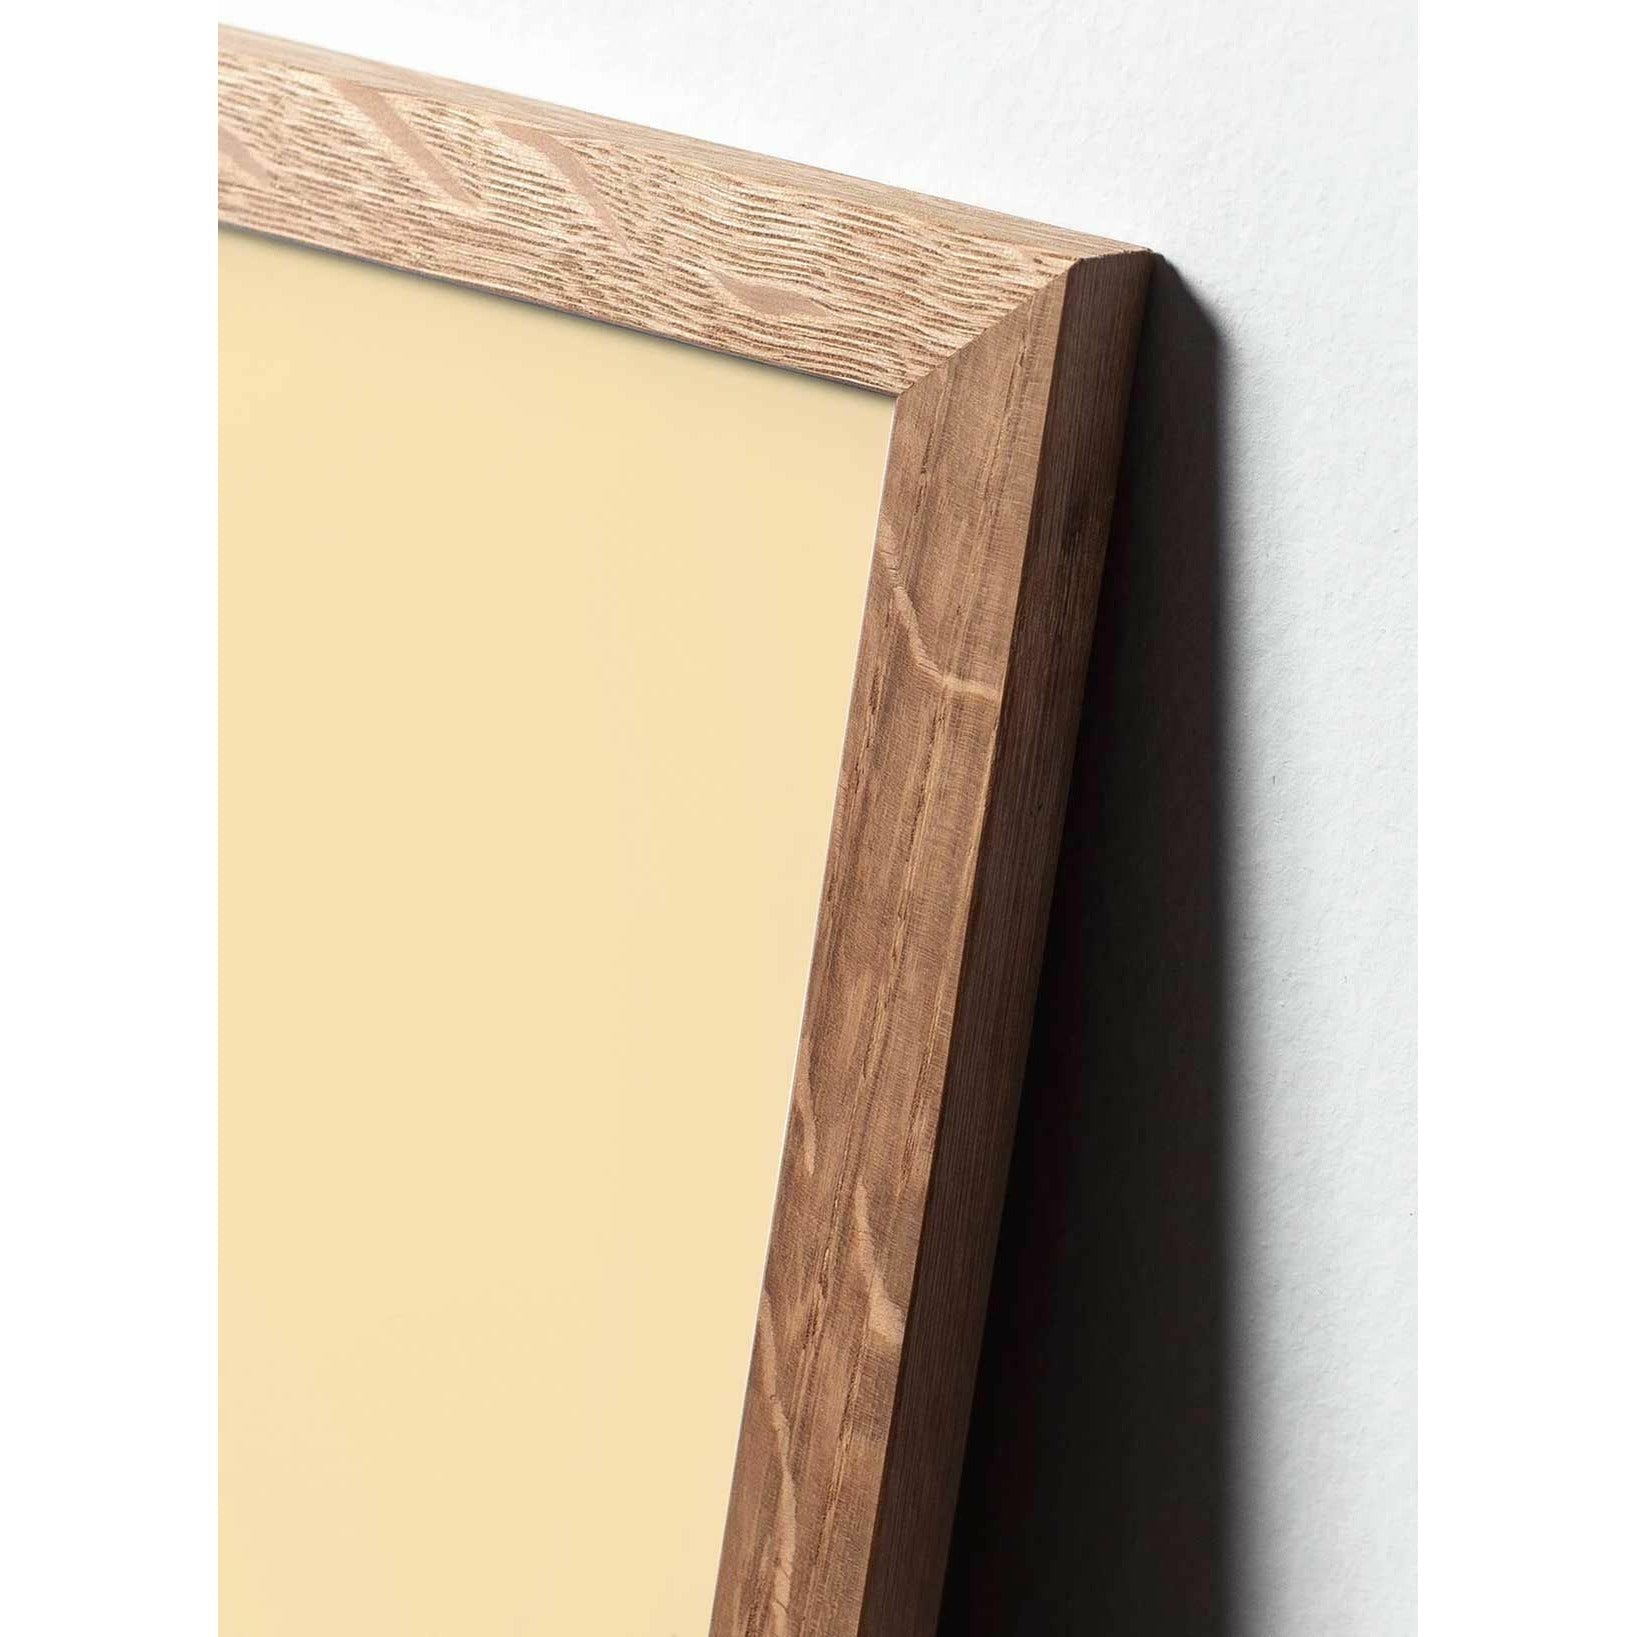 Plakat klipu z papieru do jajka, rama wykonana z jasnego drewna 70x100 cm, różowe tło